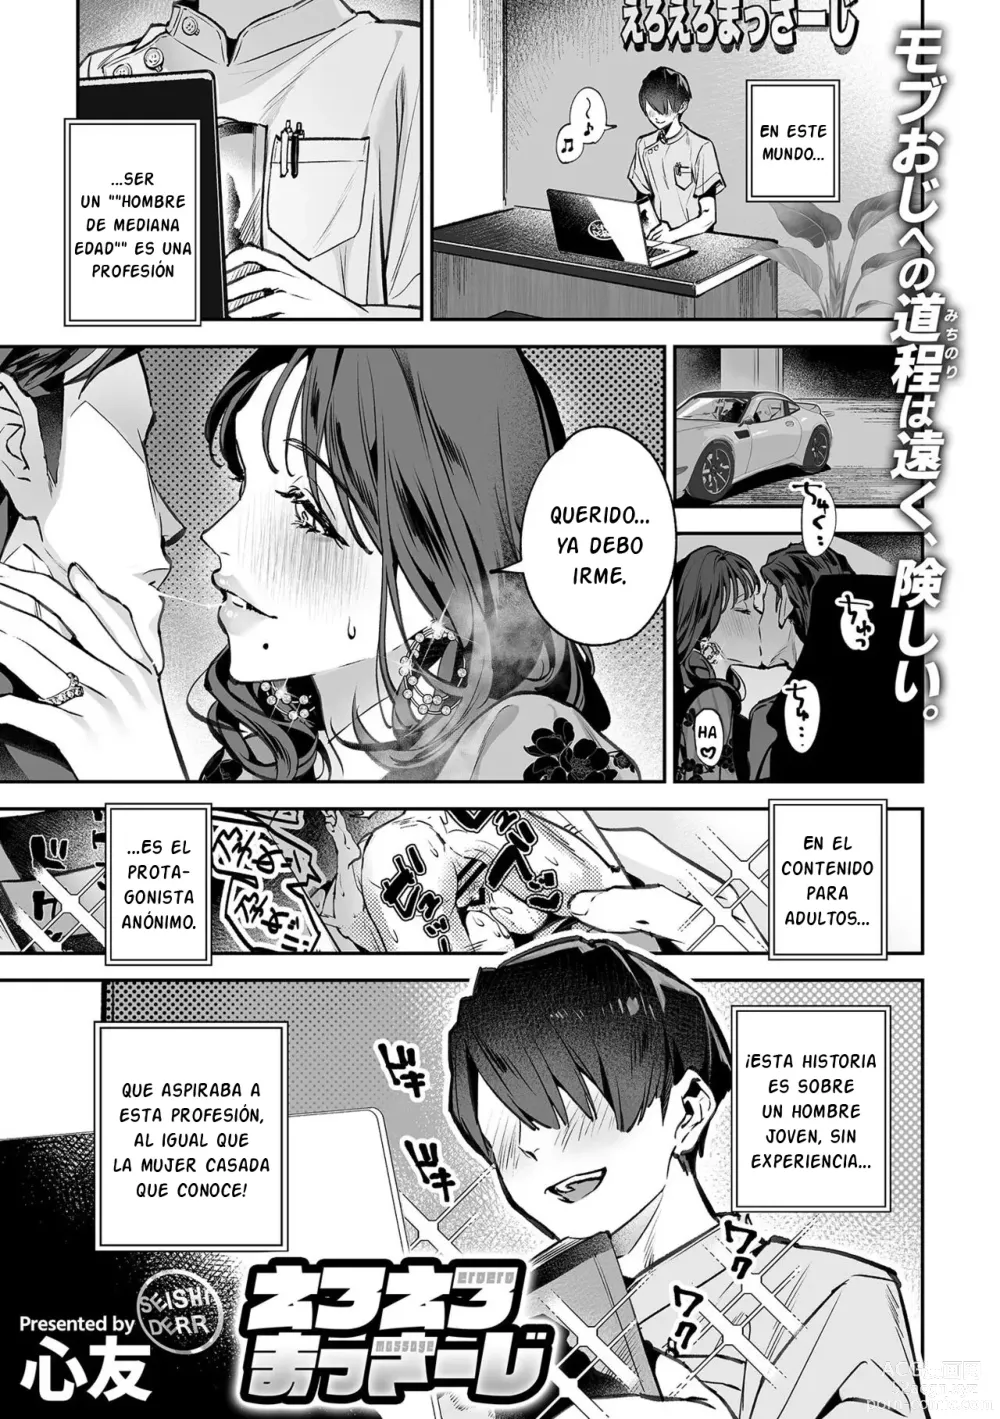 Page 2 of manga Ero-ero Massage